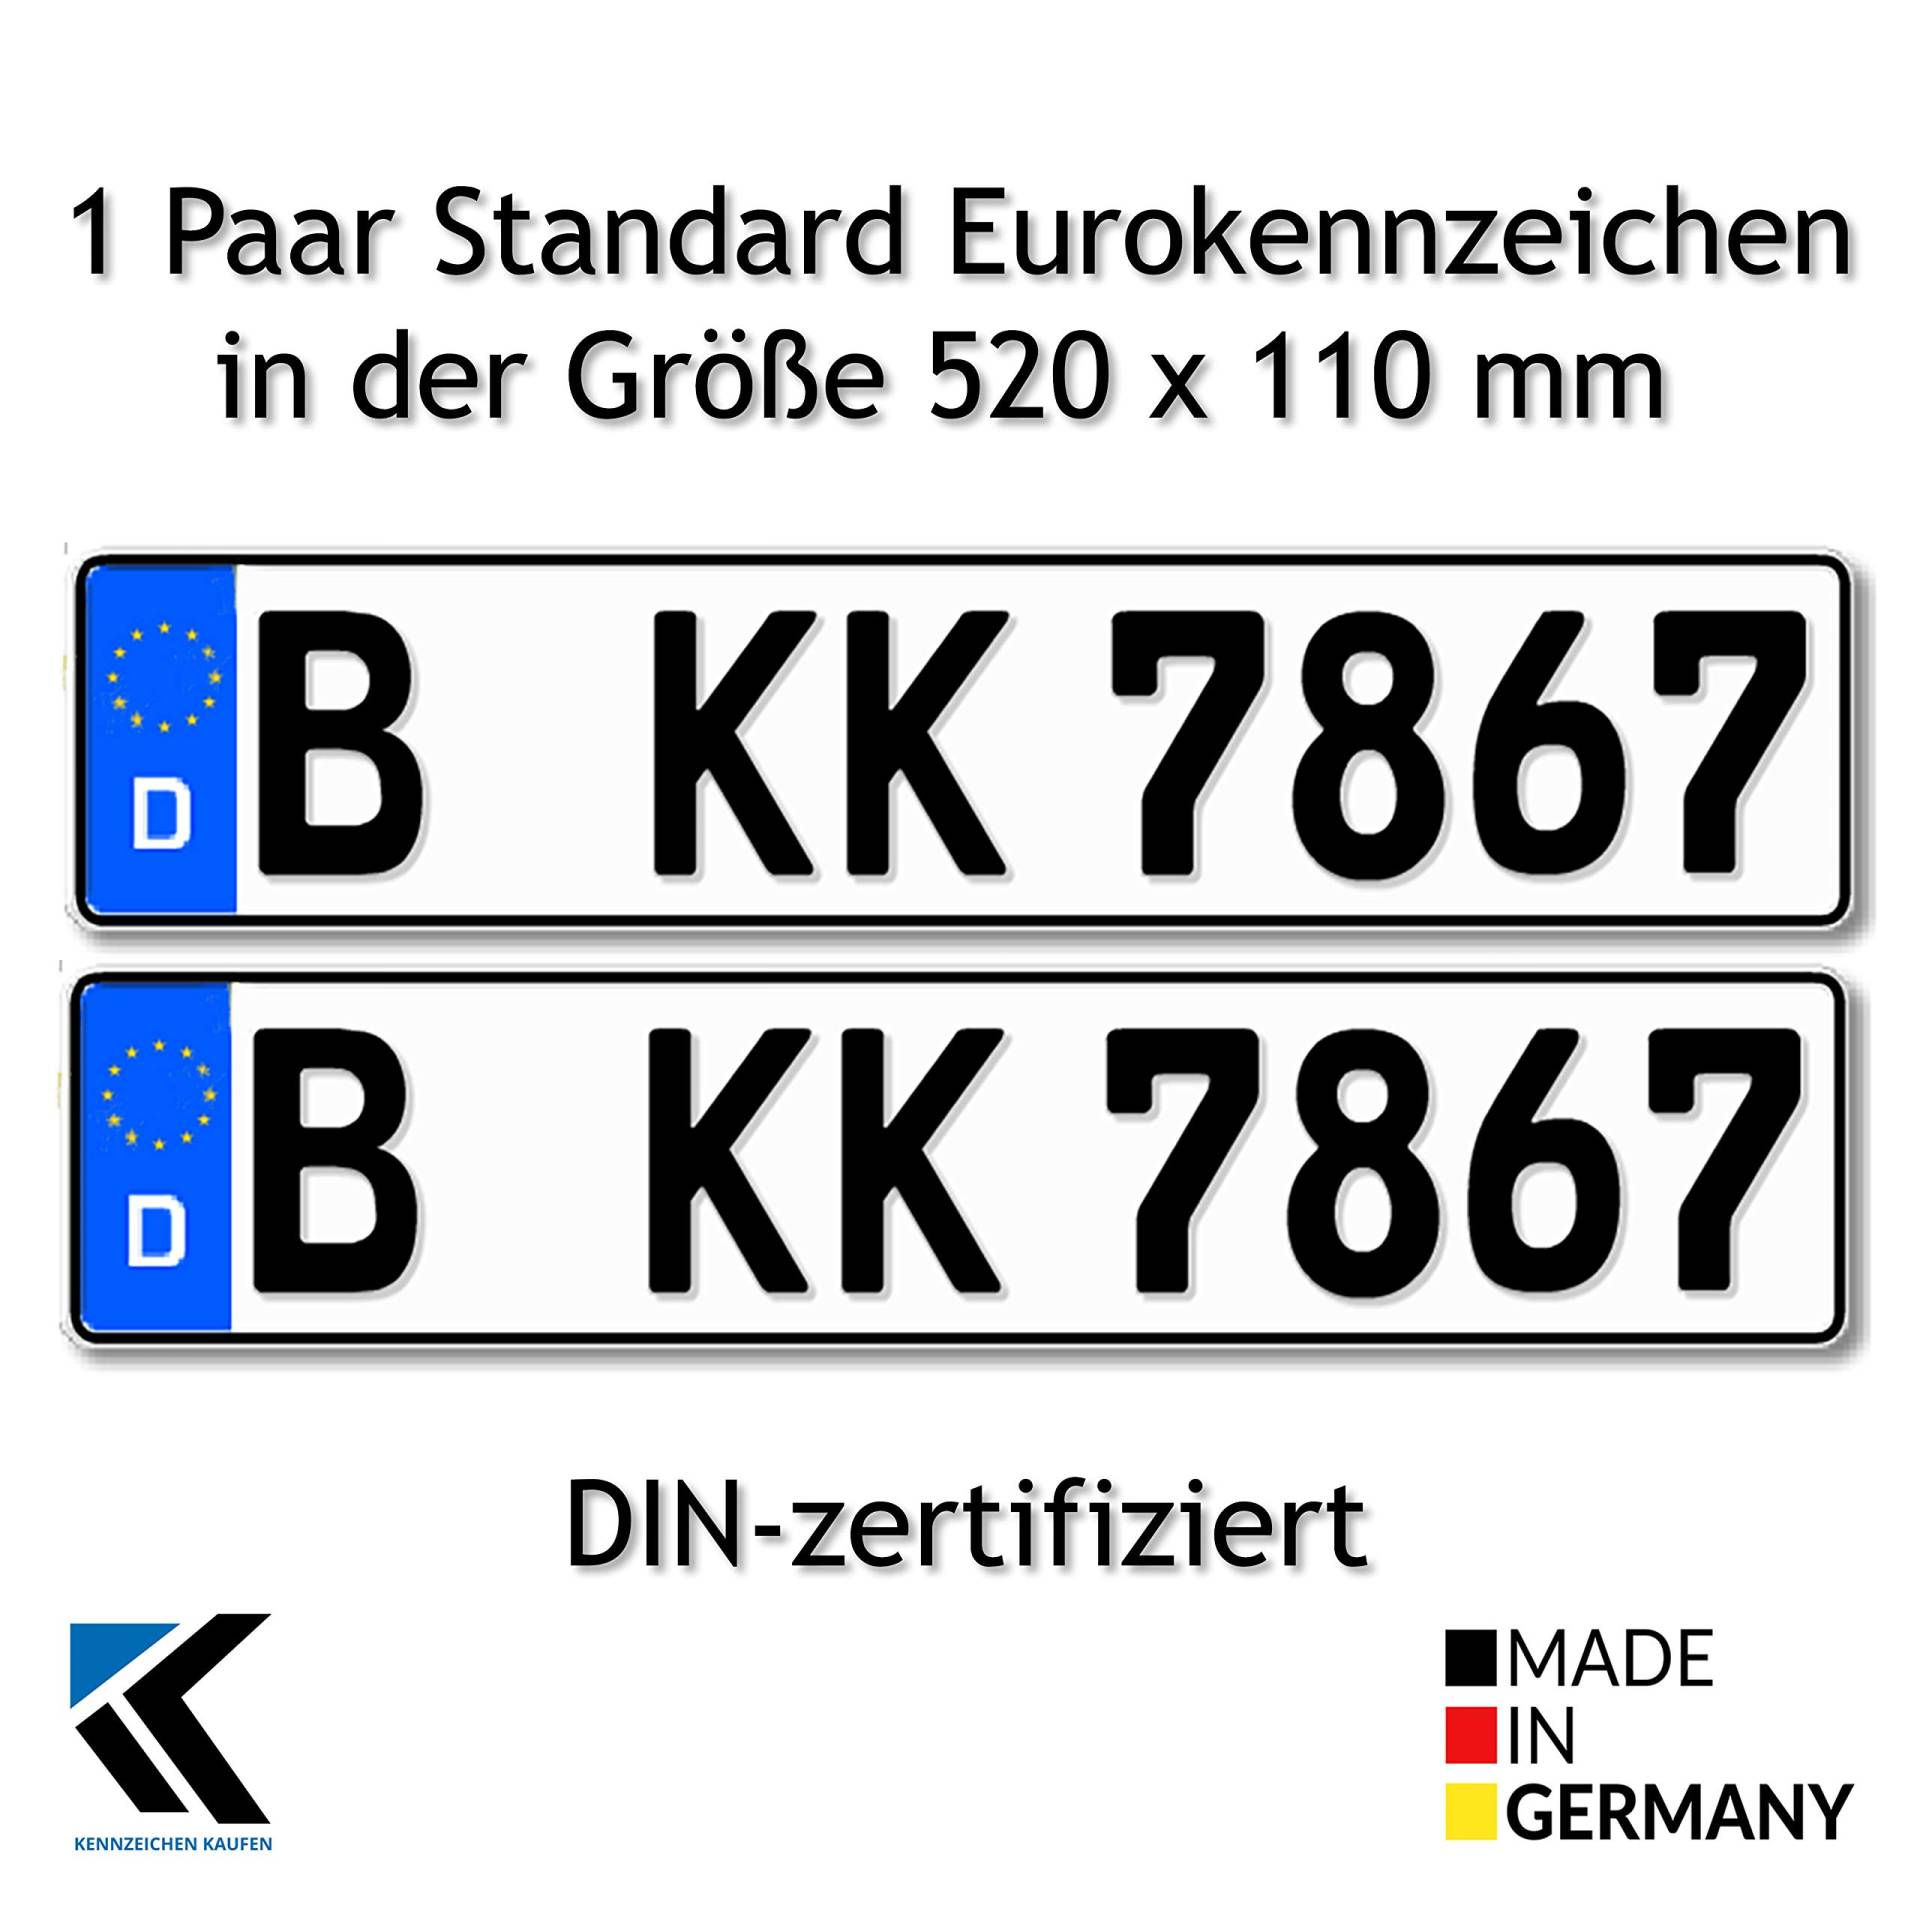 Antmas DIN-zertfizierte Euro-Kennzeichen | Kfz Kennzeichen für Deutschland (2 Kennzeichen) von Antmas